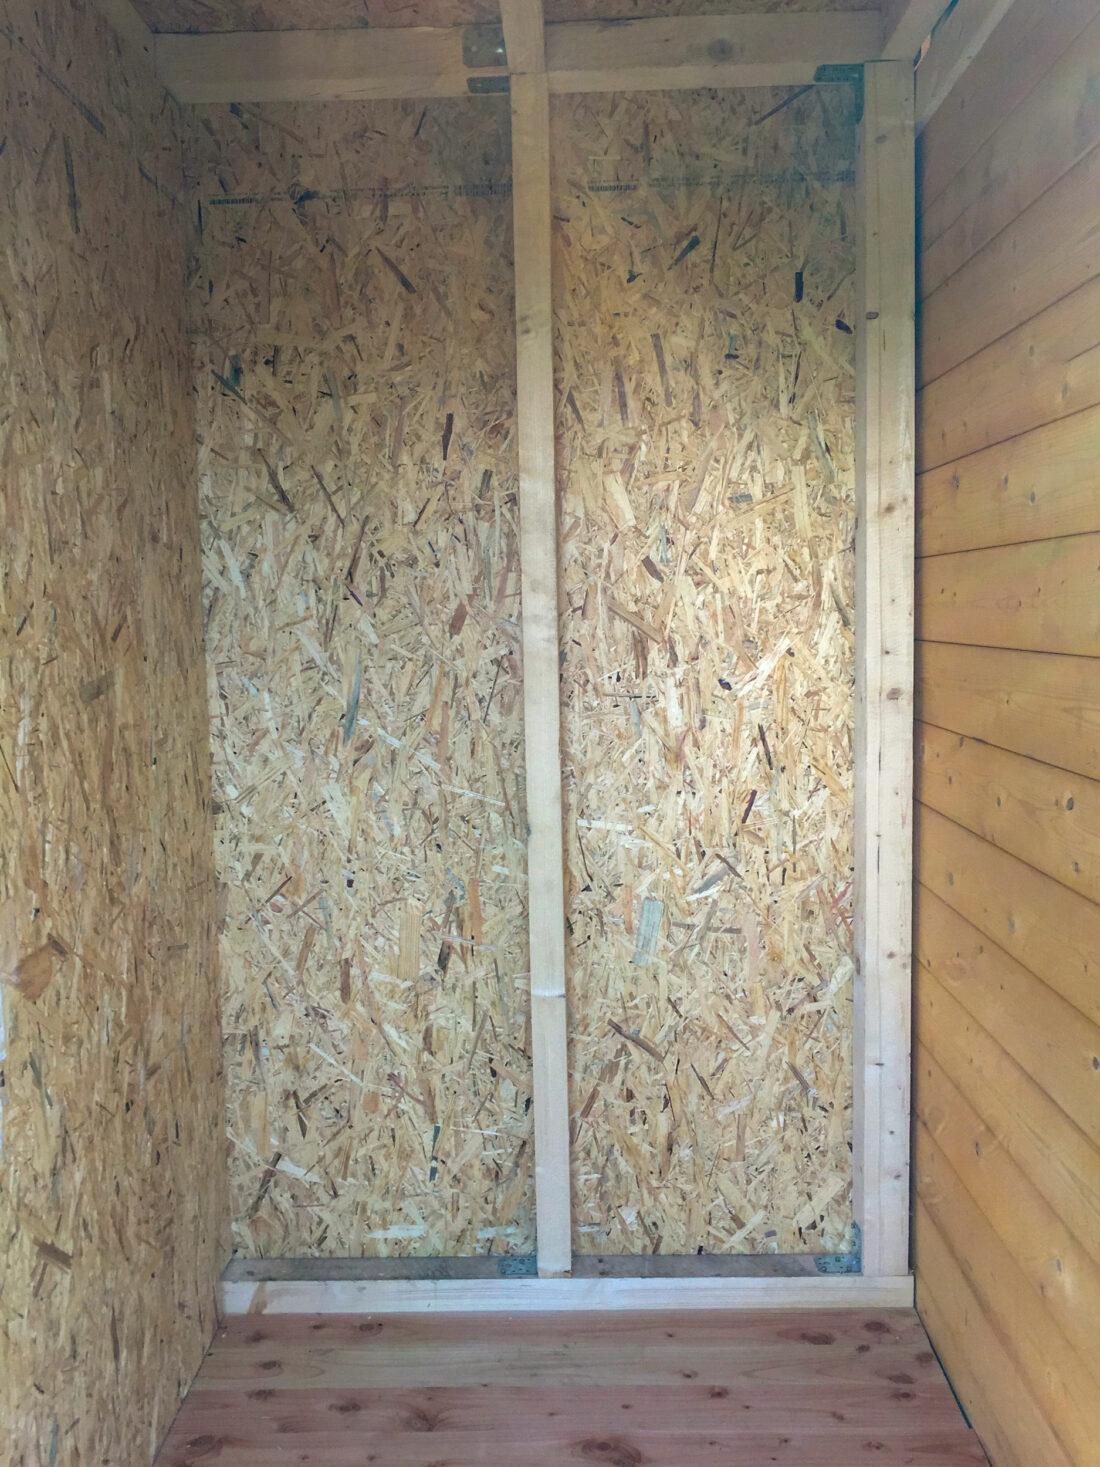 Trenntoilette selber bauen: Blick in einen mit Holz verkleideten Raum, der später ein Kompostklo beherbergt. 